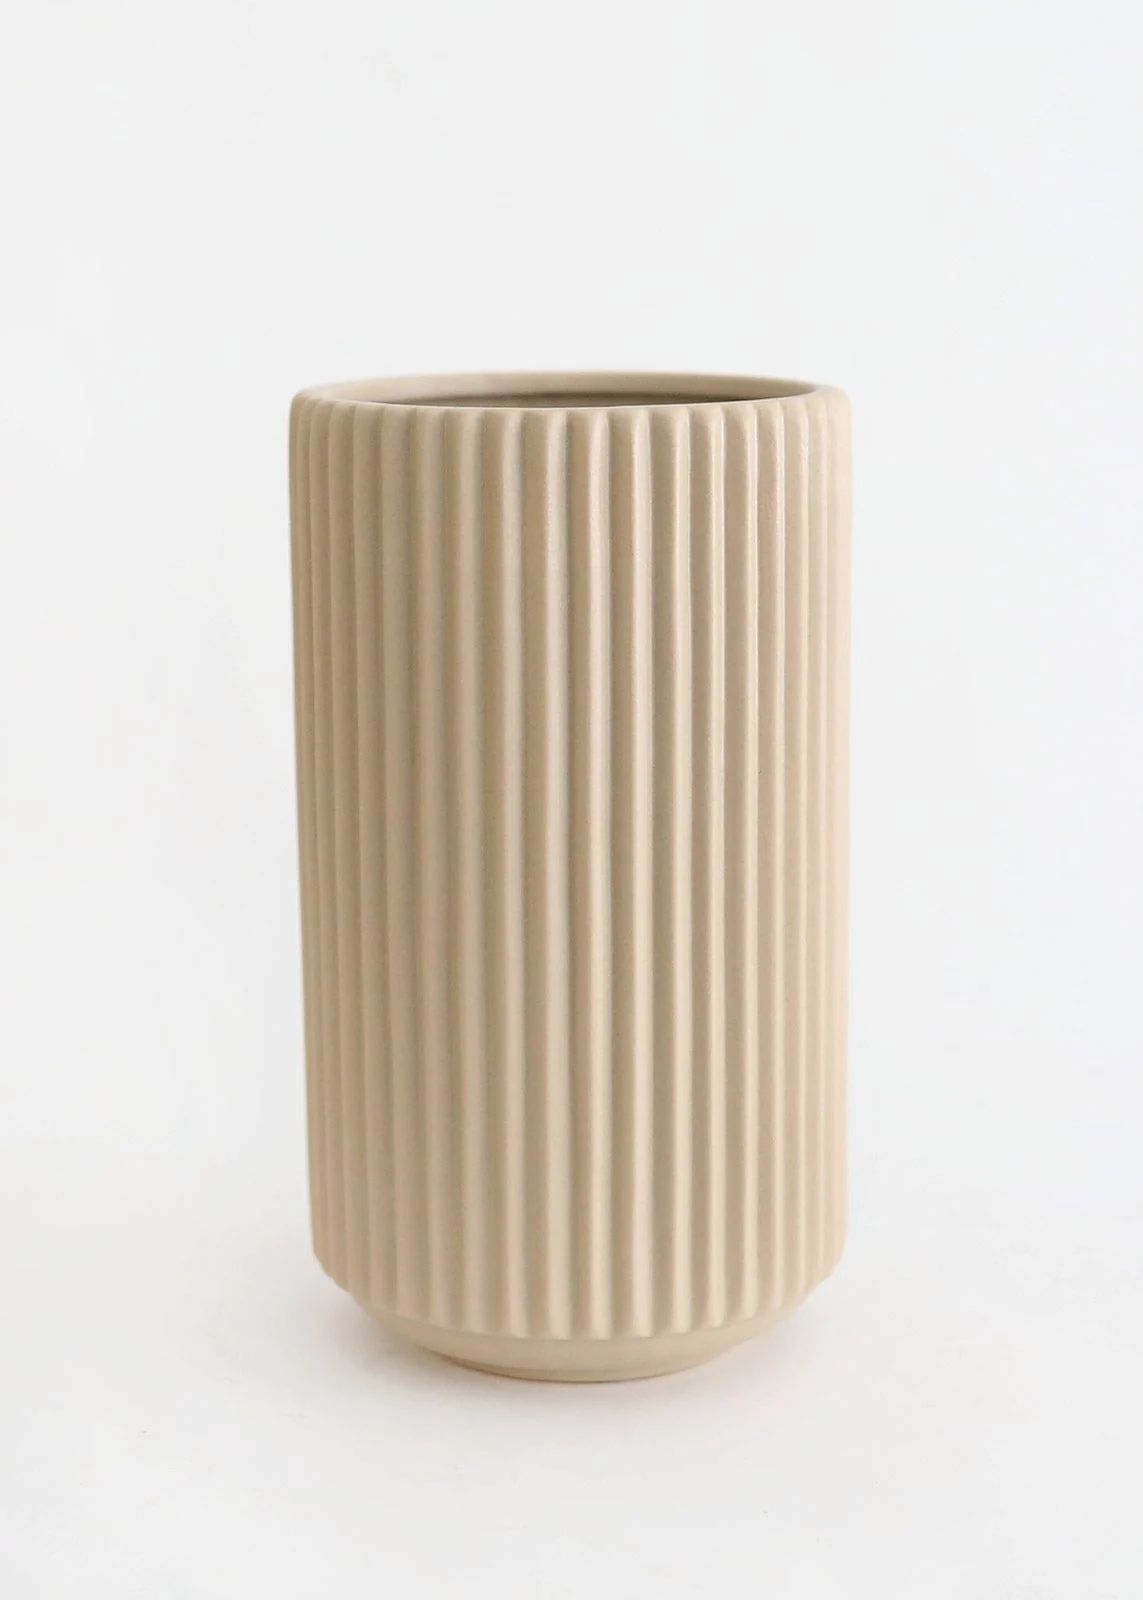 Afloral Ceramic Wide Ribbed Vase in Beige - 10" Tall | Afloral (US)